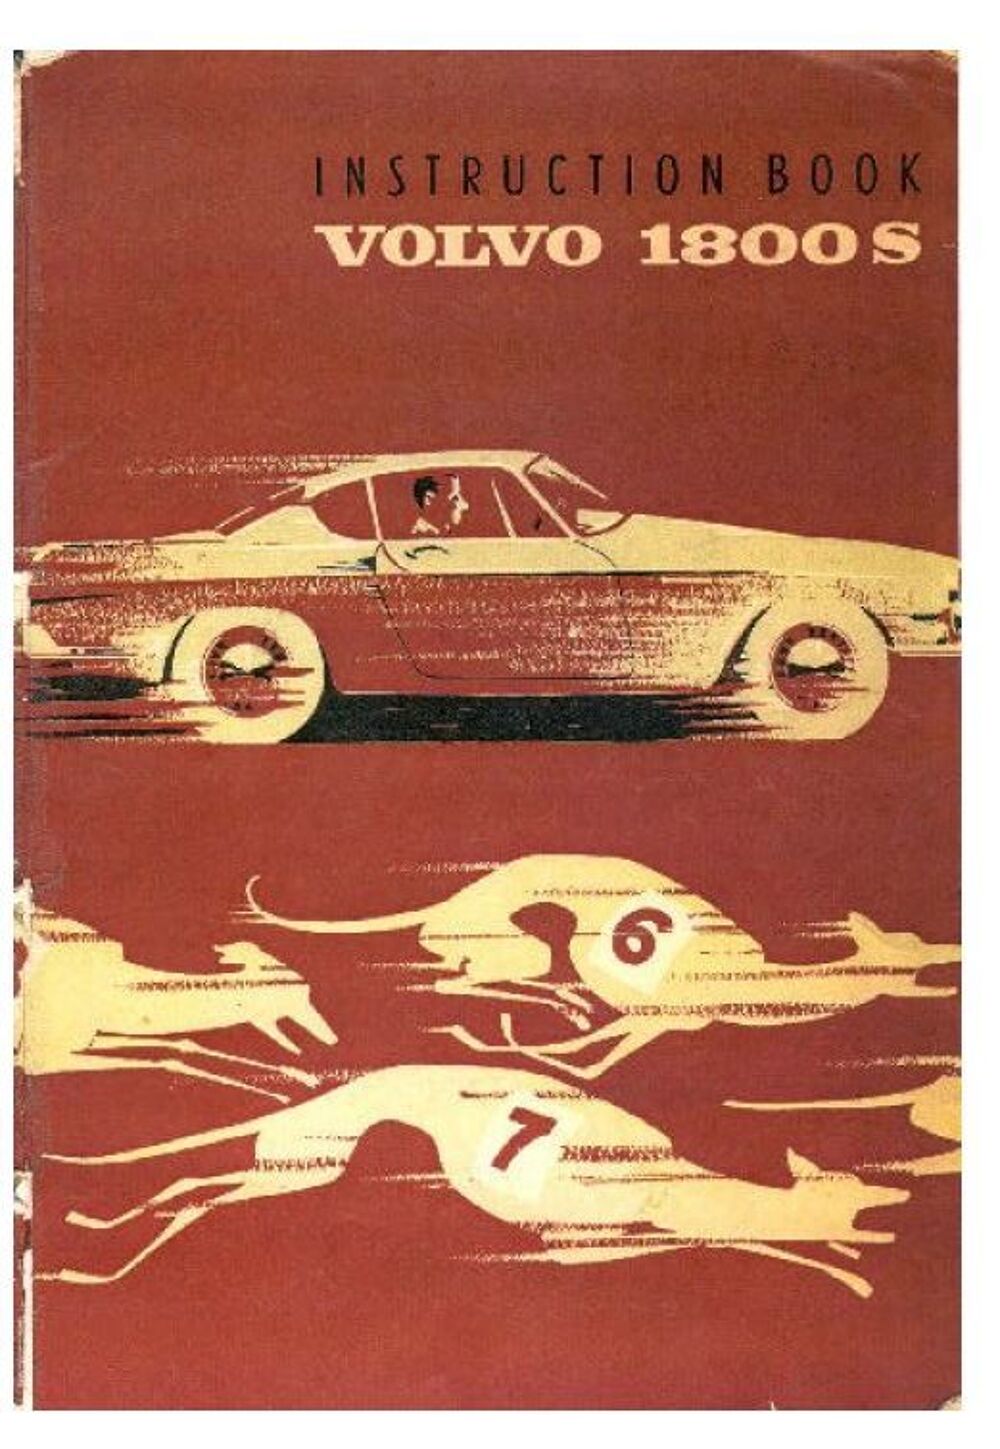 Manuels d'atelier Volvo P1800 Livres et BD